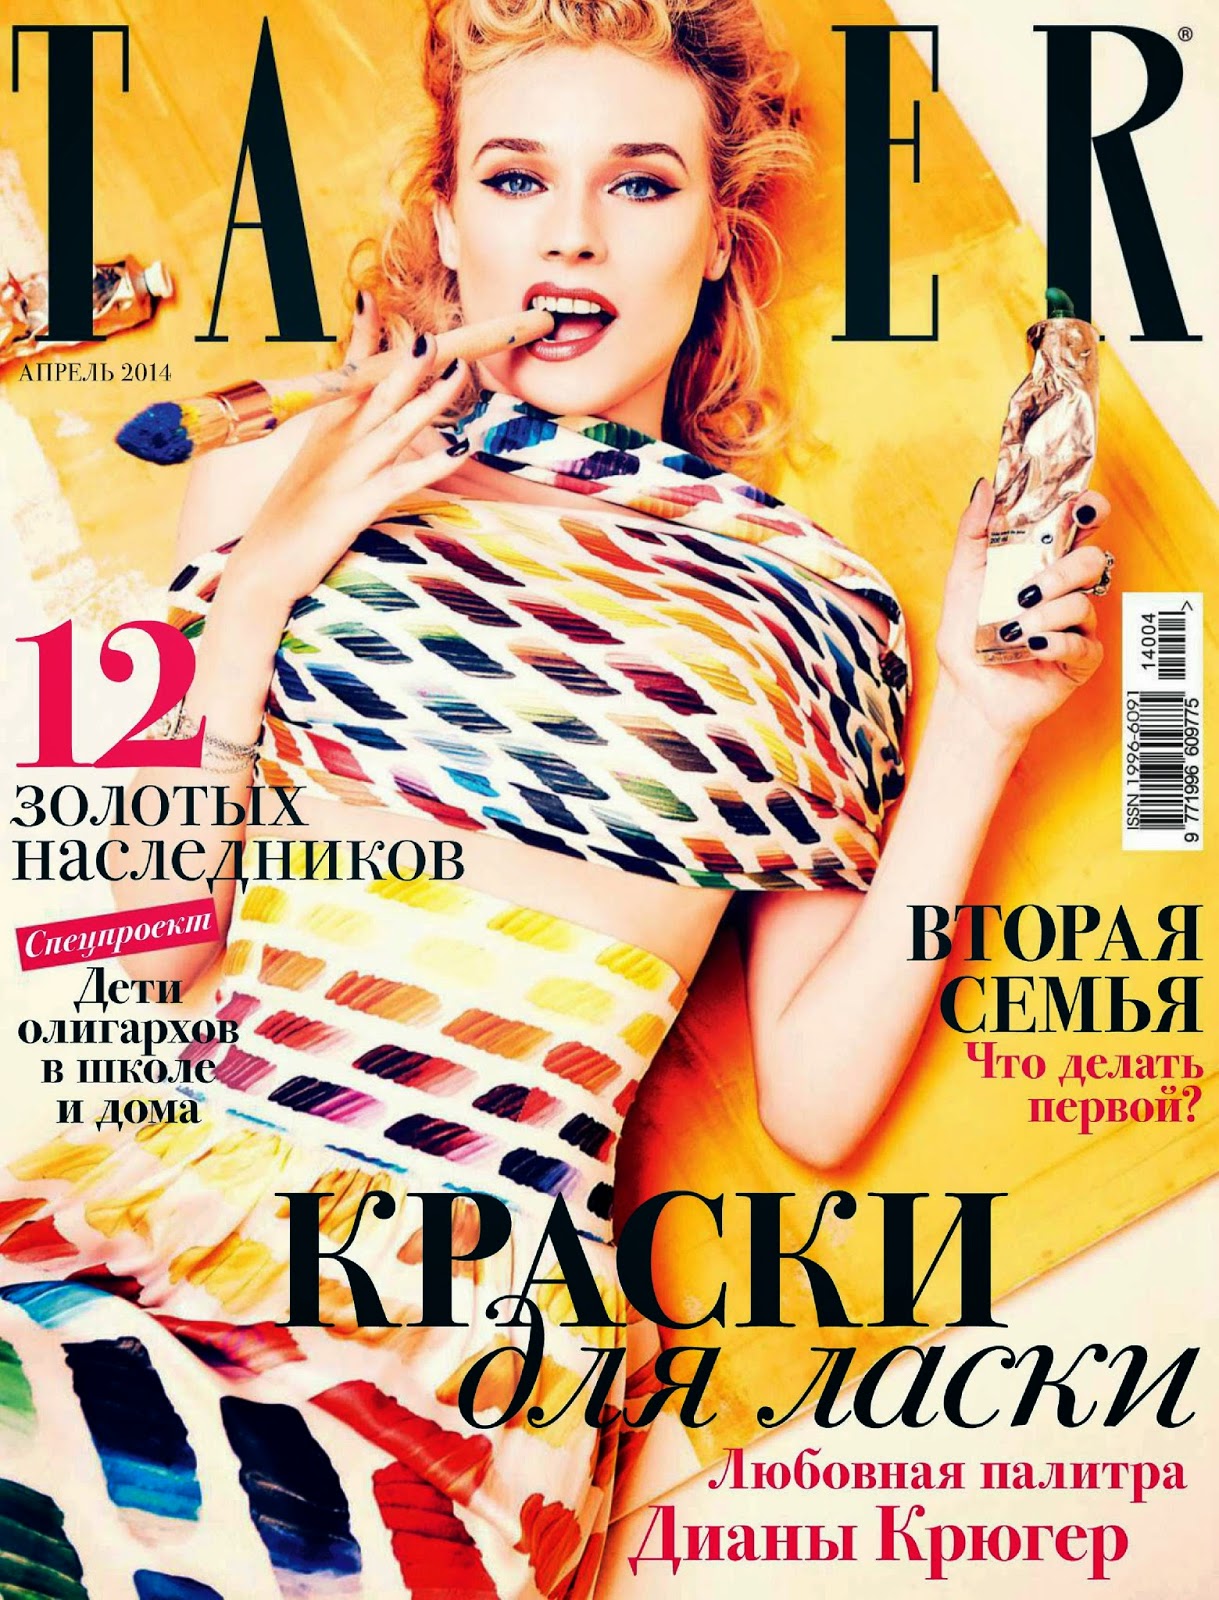 صور ديان كروغر على مجلة Tatler الروسية ابريل 2014